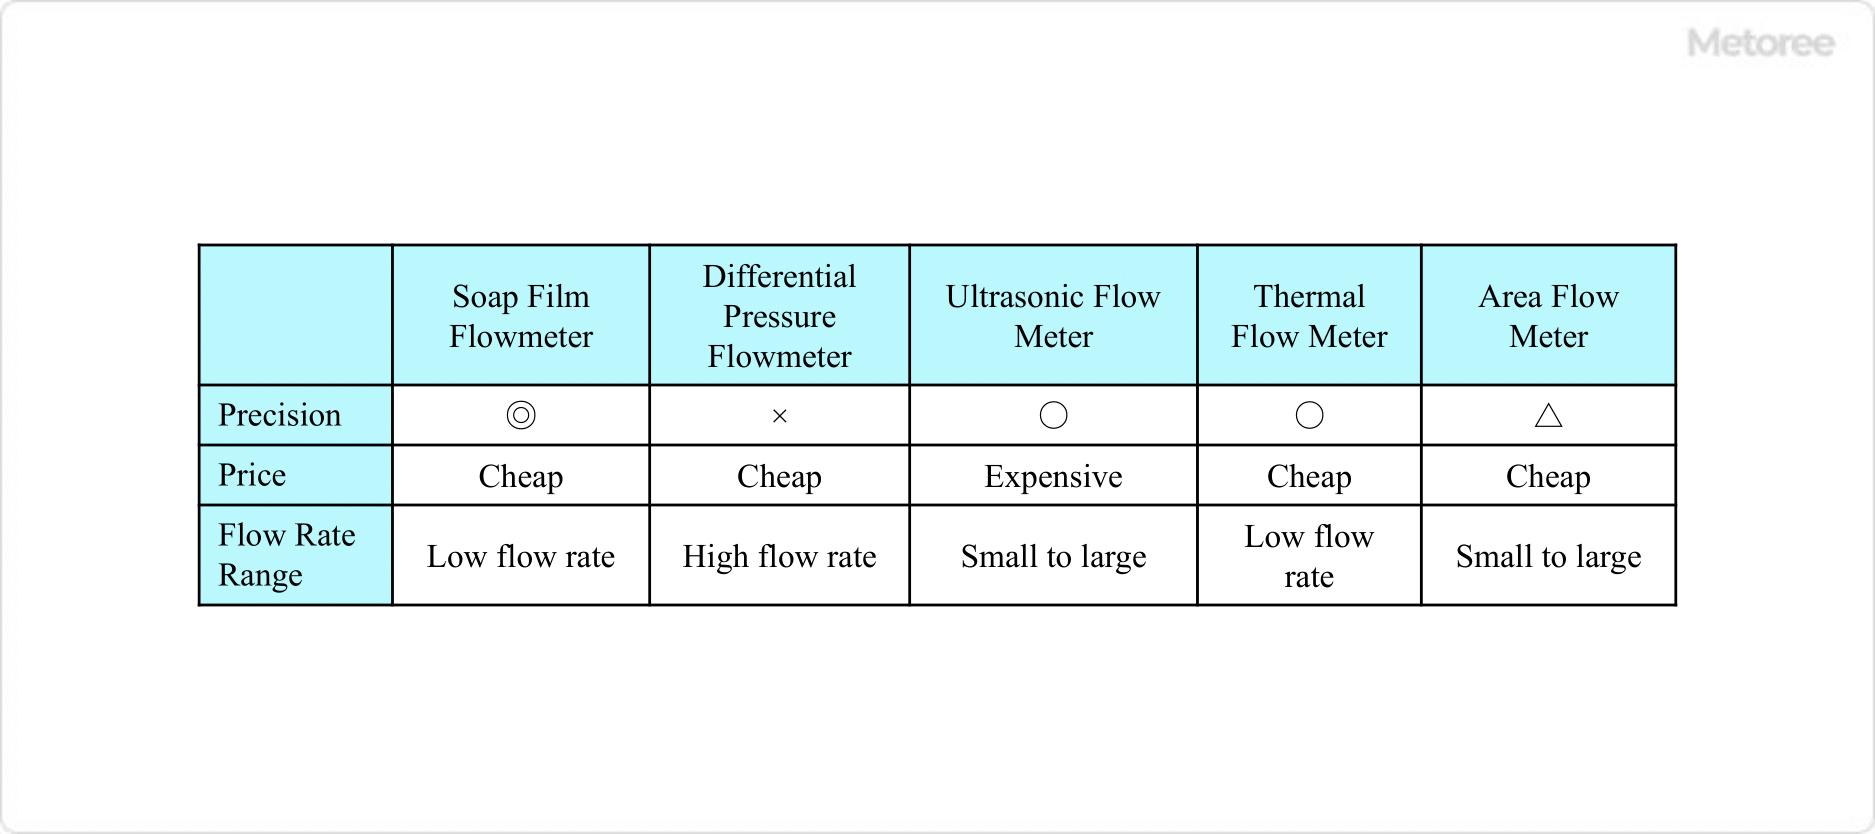 Figure 1. Various flow meters